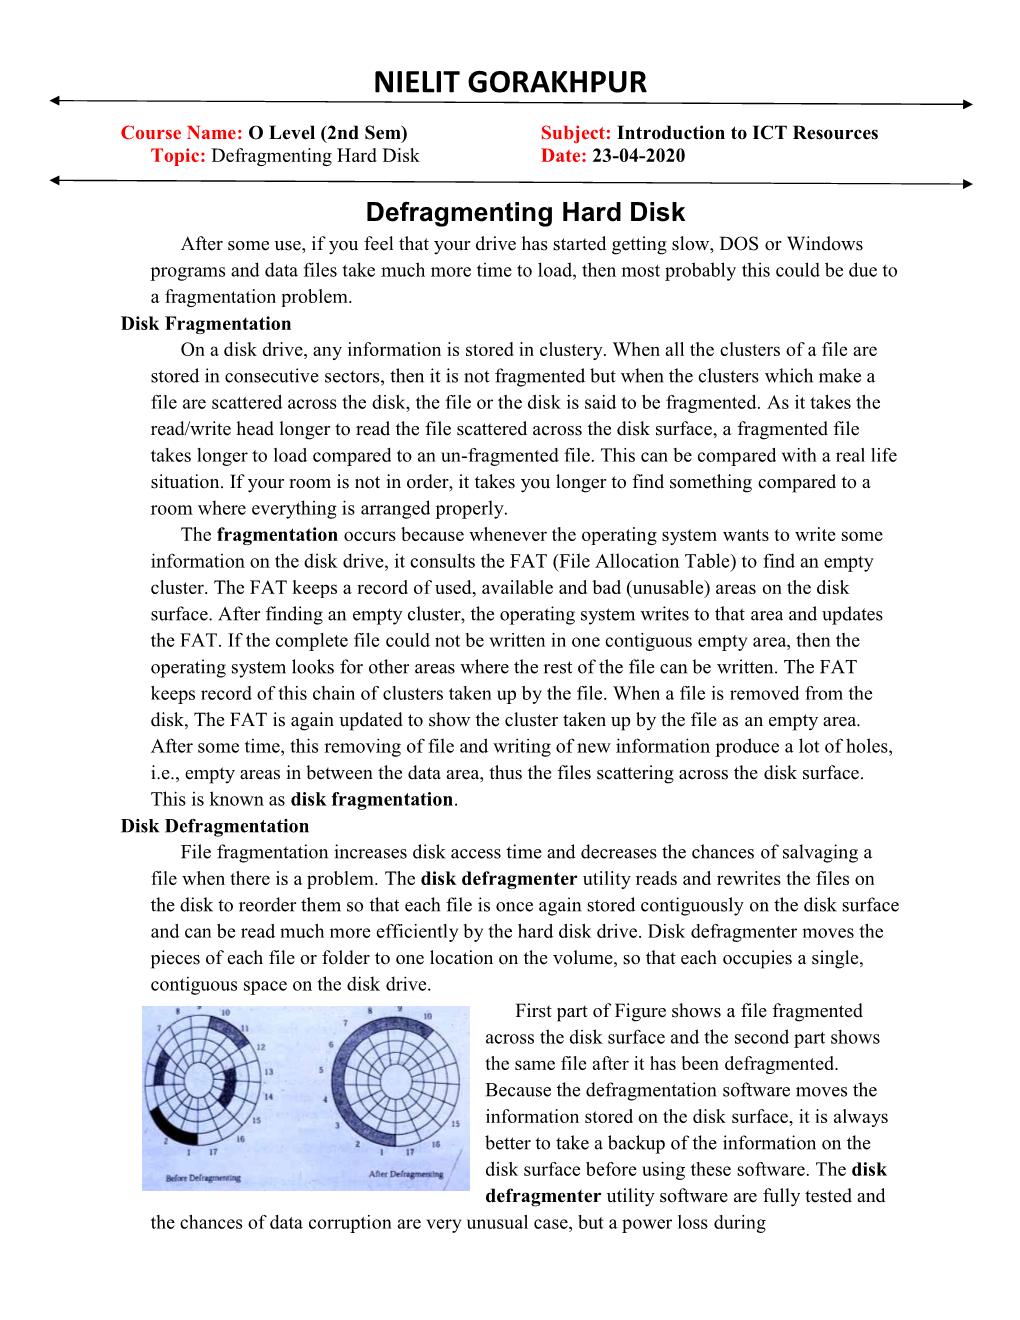 Defragmenting Hard Disk